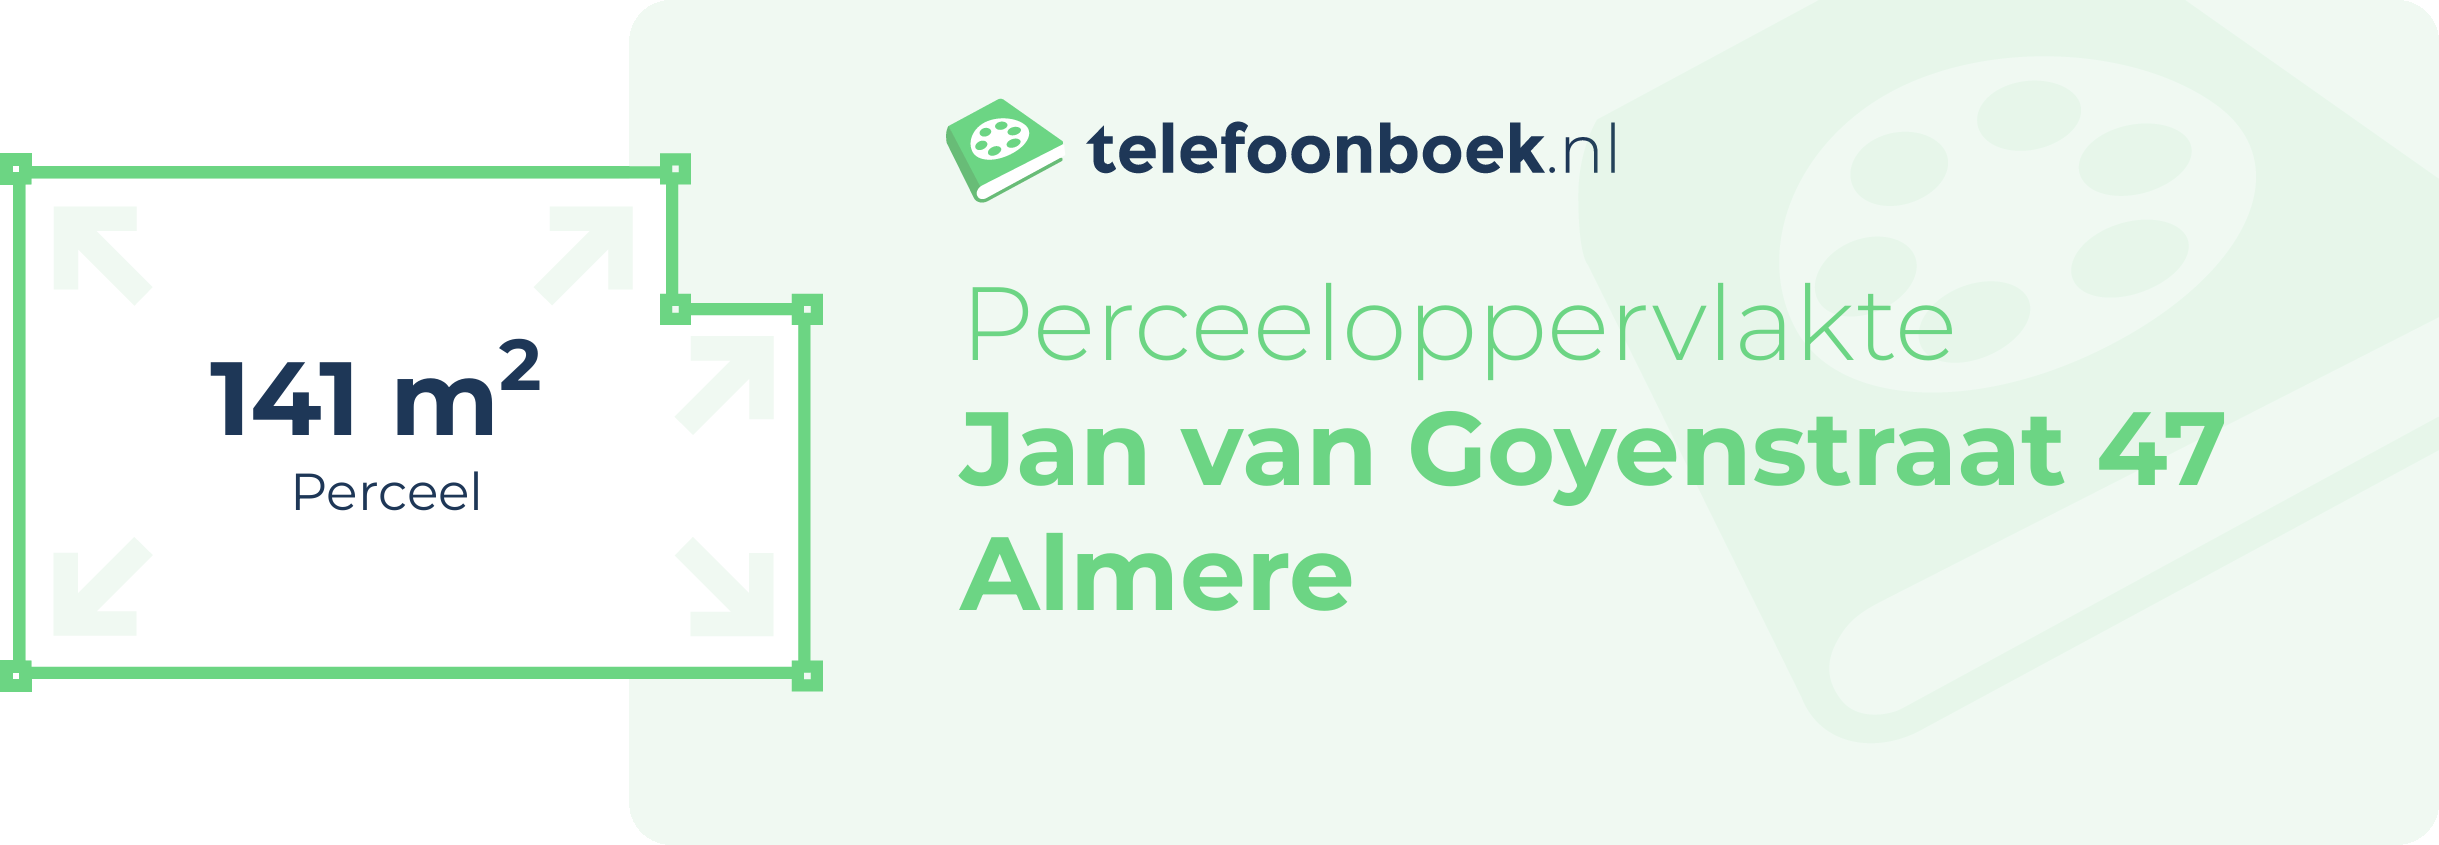 Perceeloppervlakte Jan Van Goyenstraat 47 Almere